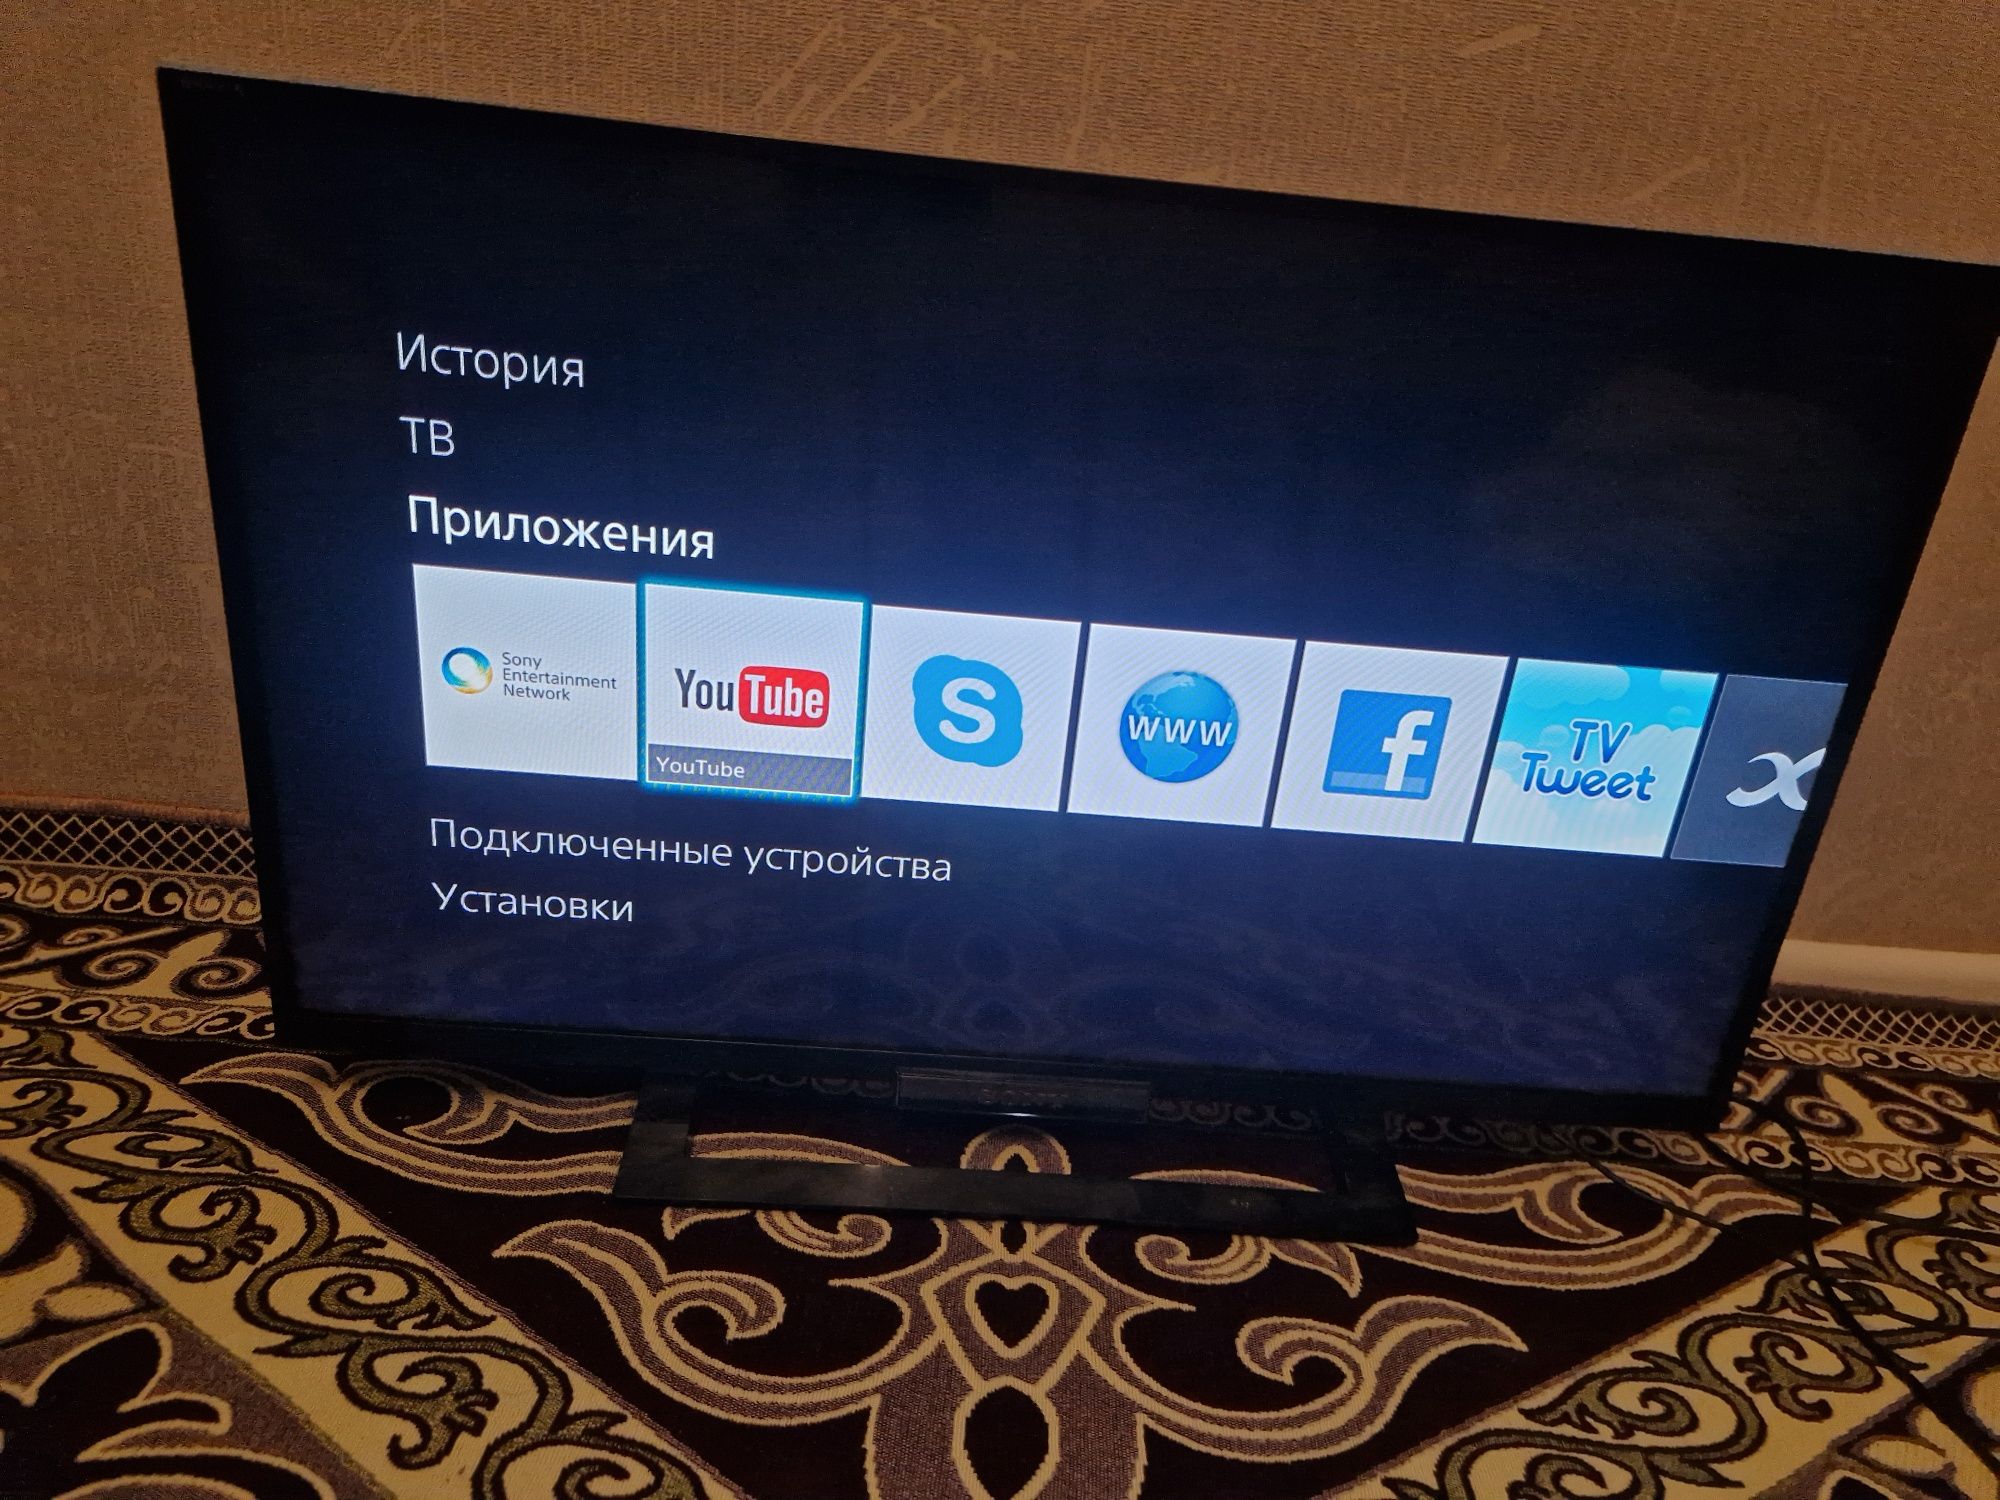 Sony Smart Tv 32дюйма(81см) в идеальном состоянии  / BTV !!!